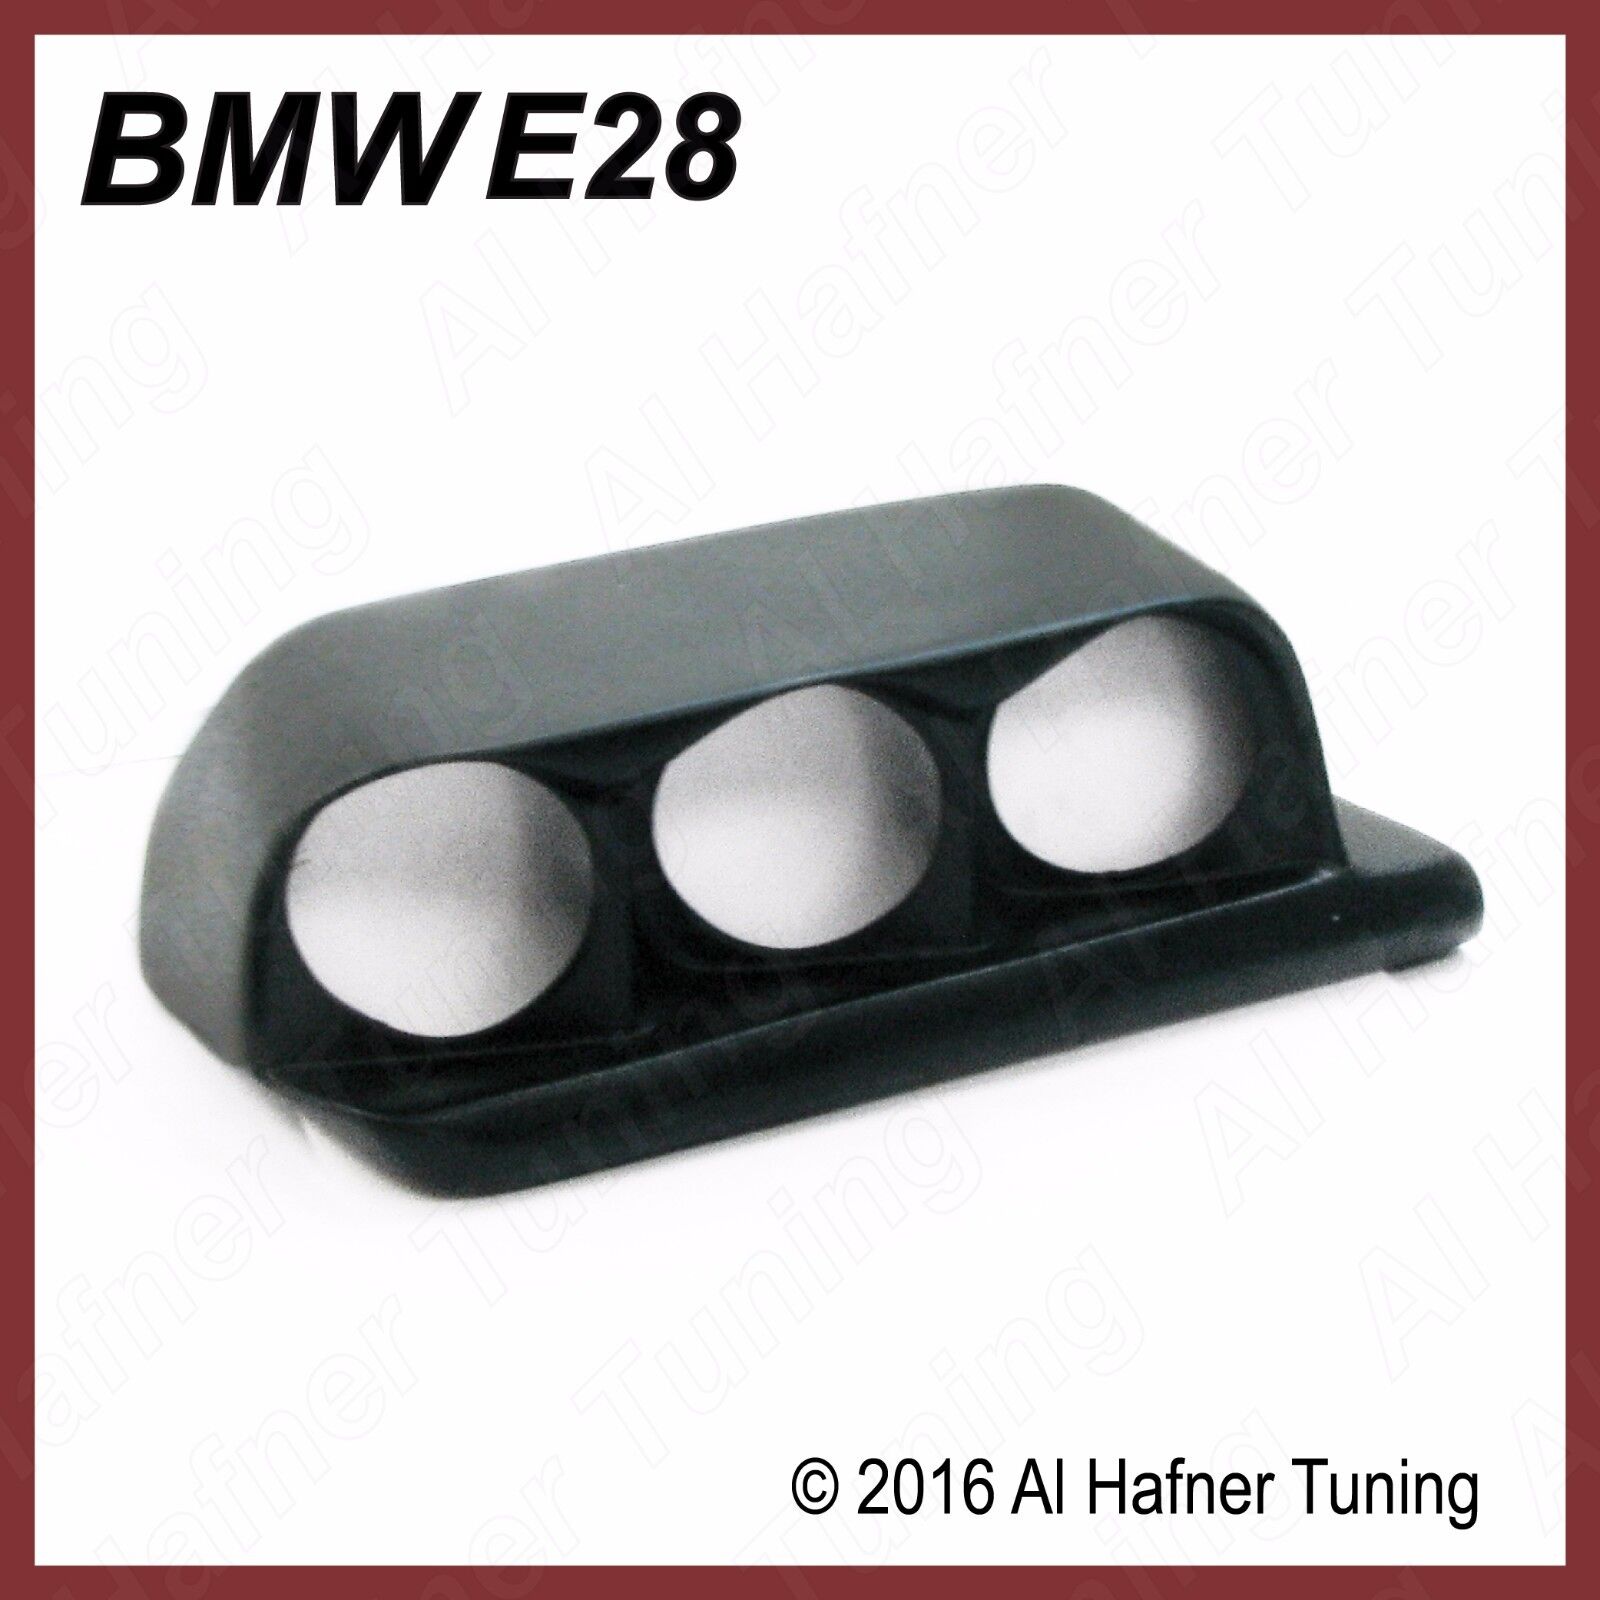 BMW 528e, 533i, 535i, M5 e28 82-88 VDO gauge console (without gauges)